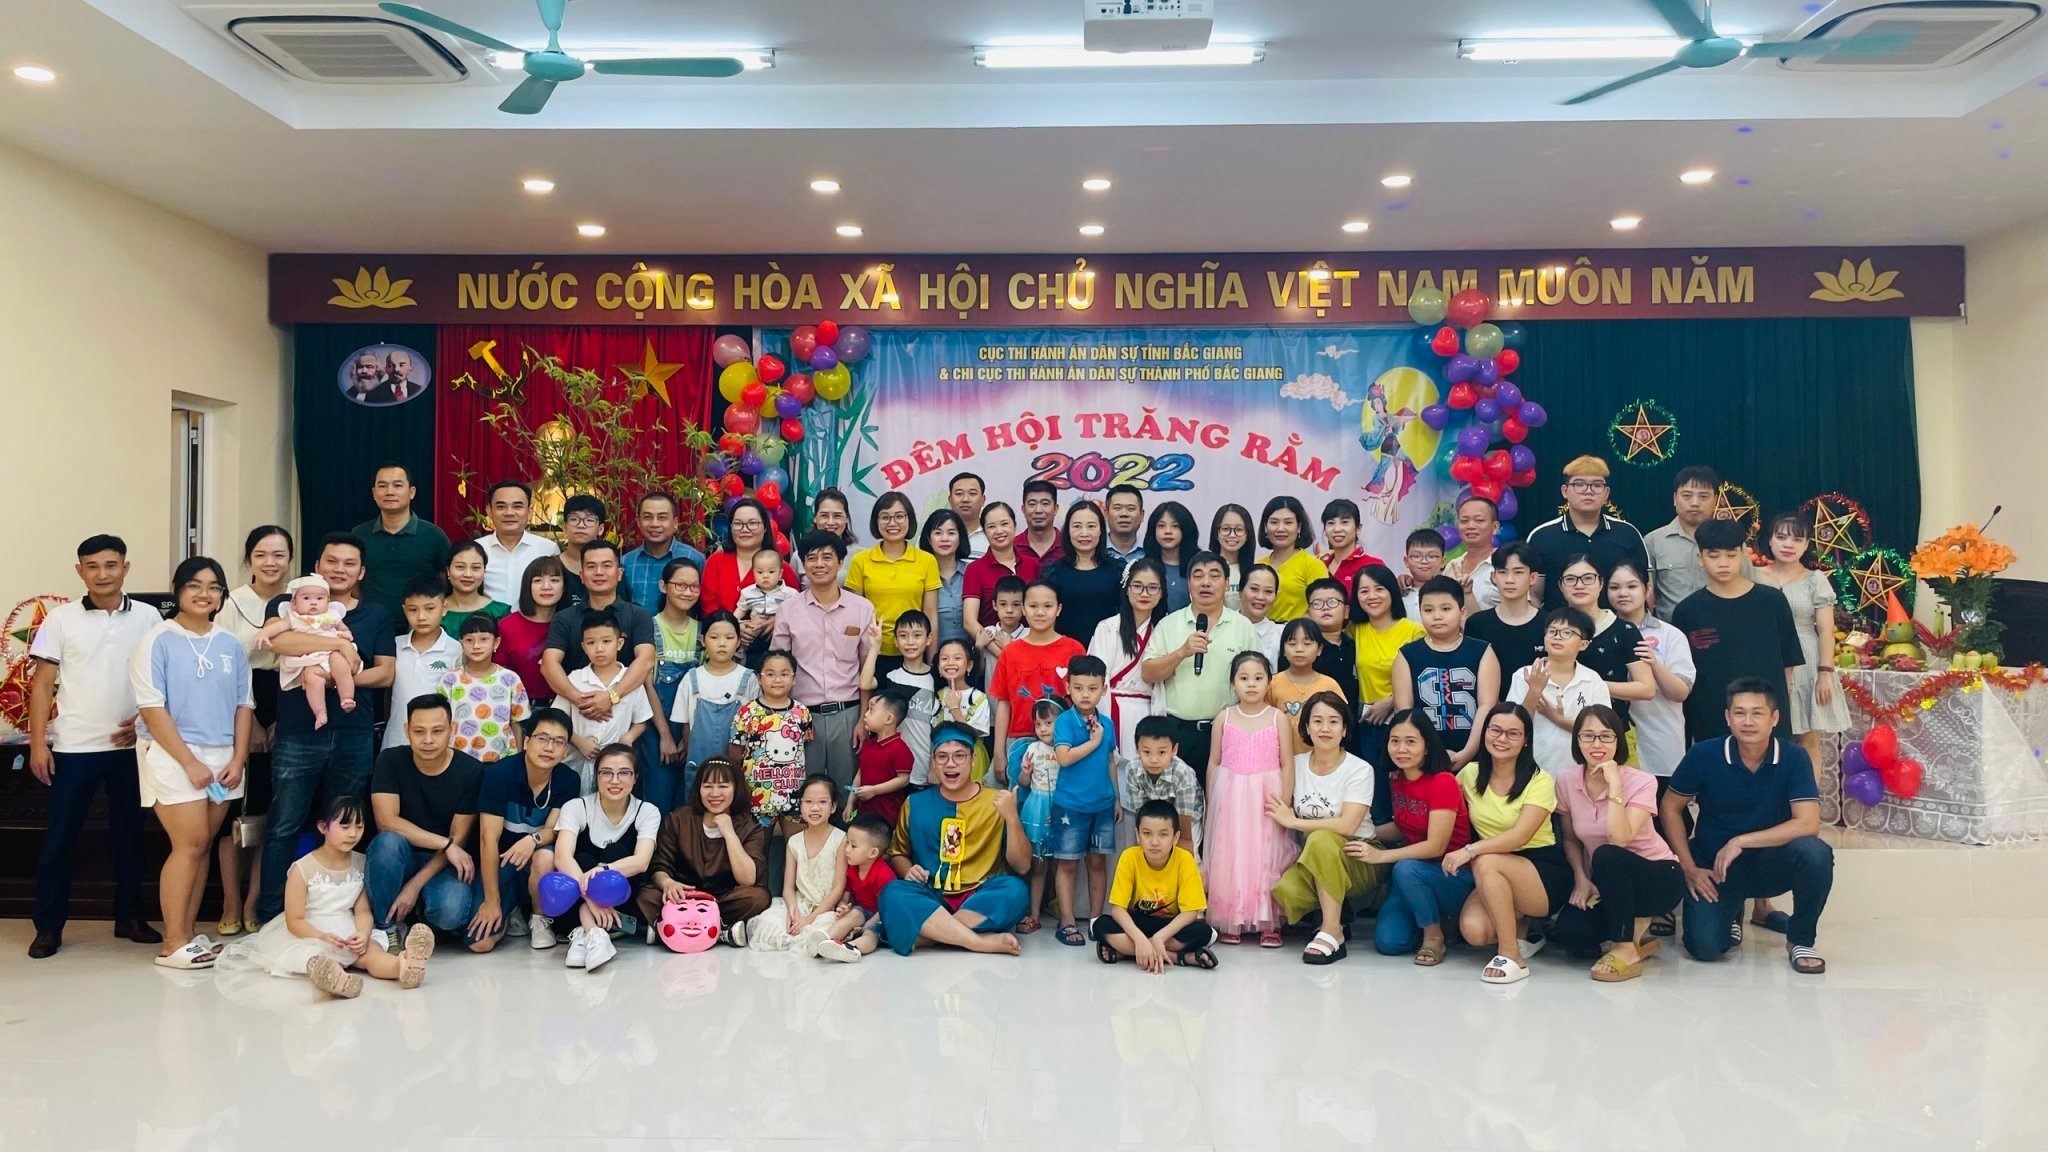 Cục THADS và Chi cục THADS thành phố Bắc Giang tổ chức Đêm hội Trăng rằm năm 2022